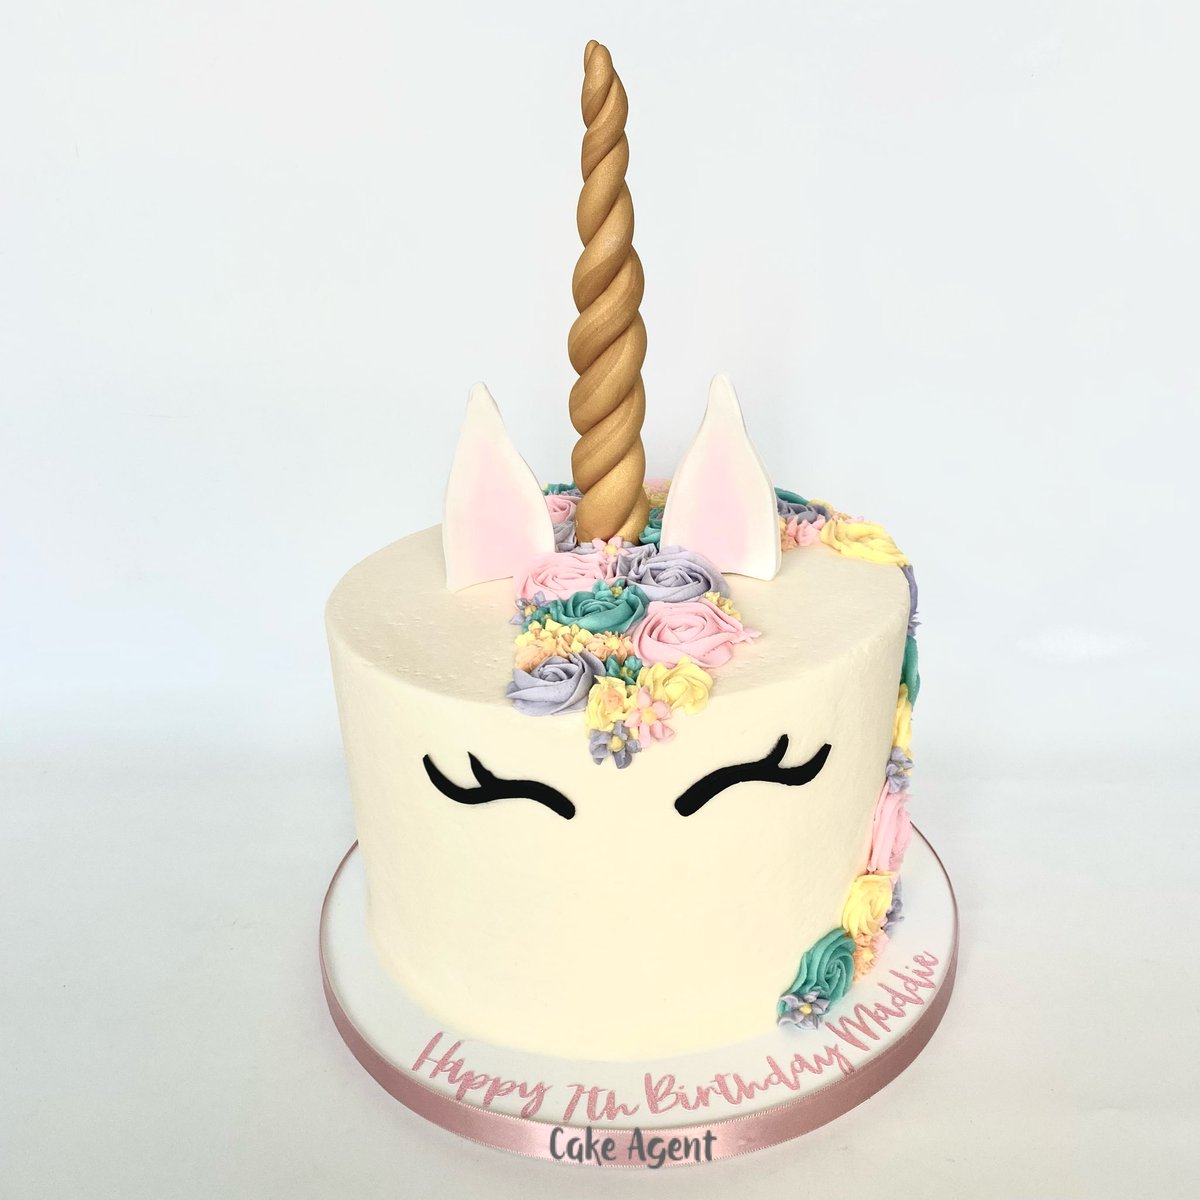 #unicorncake #pastelcake #unicornparty #birthdaycake #cakeagent